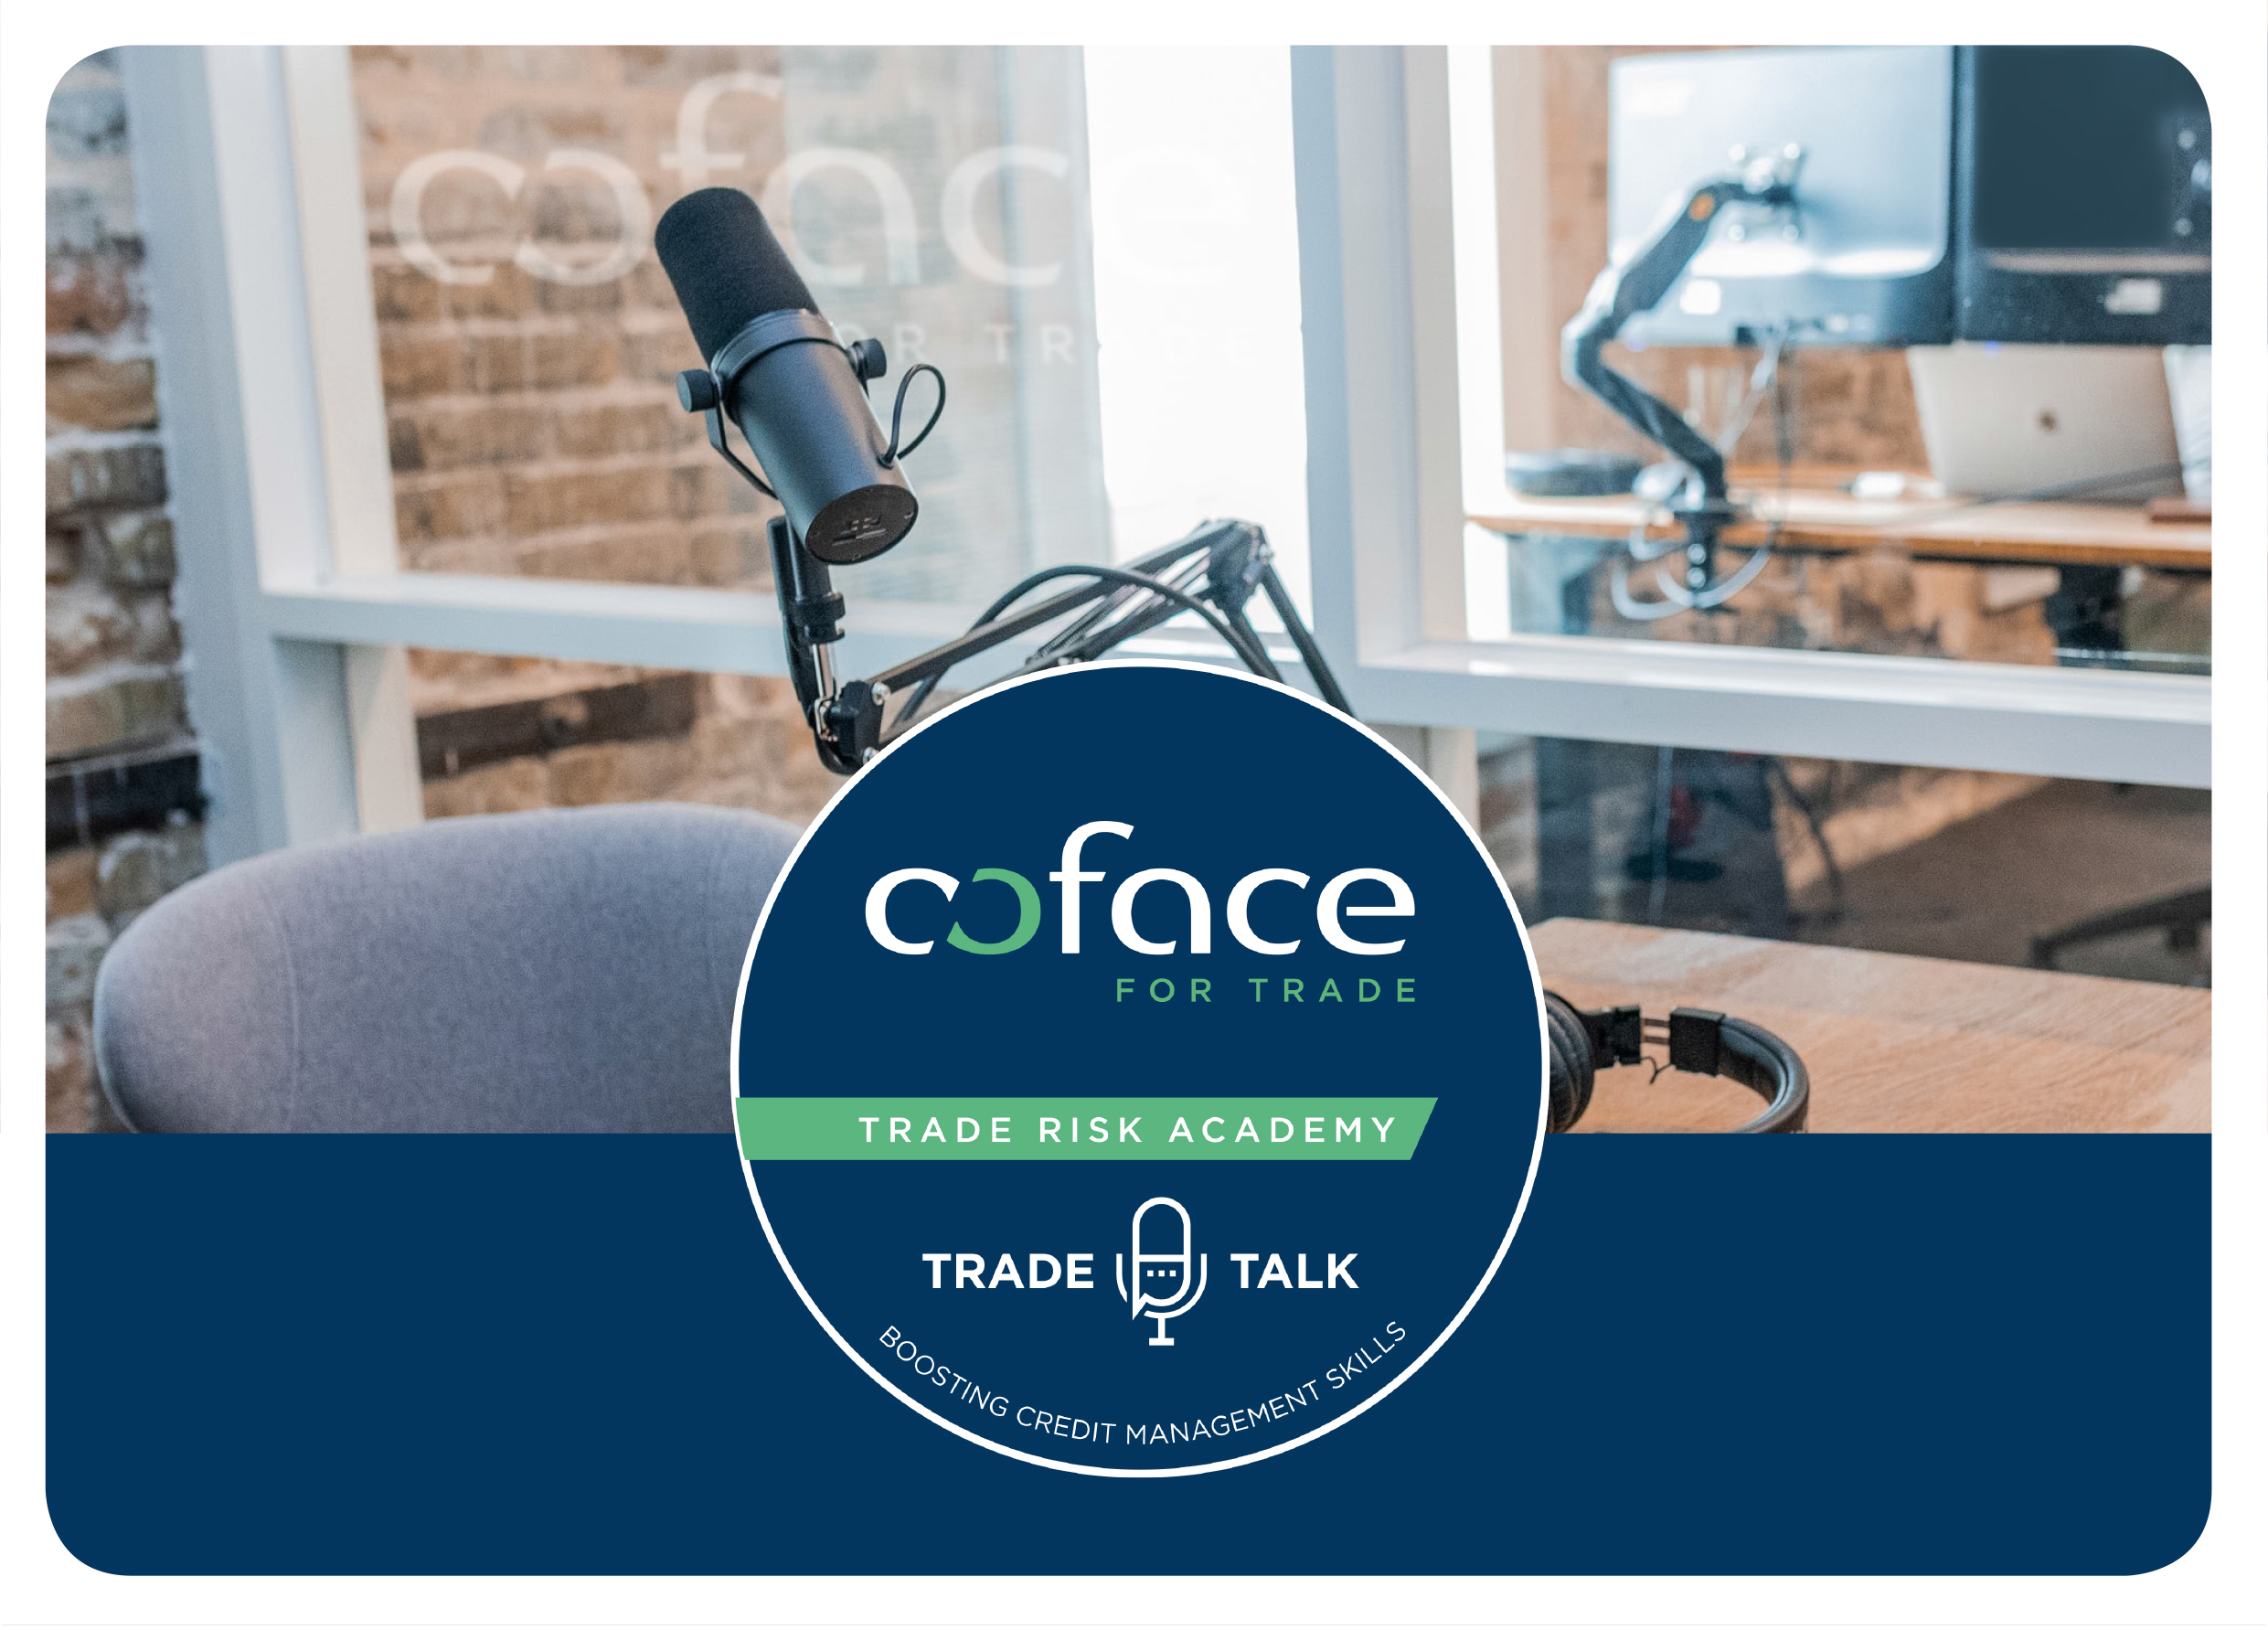 Coface trade risk academy - trade talk